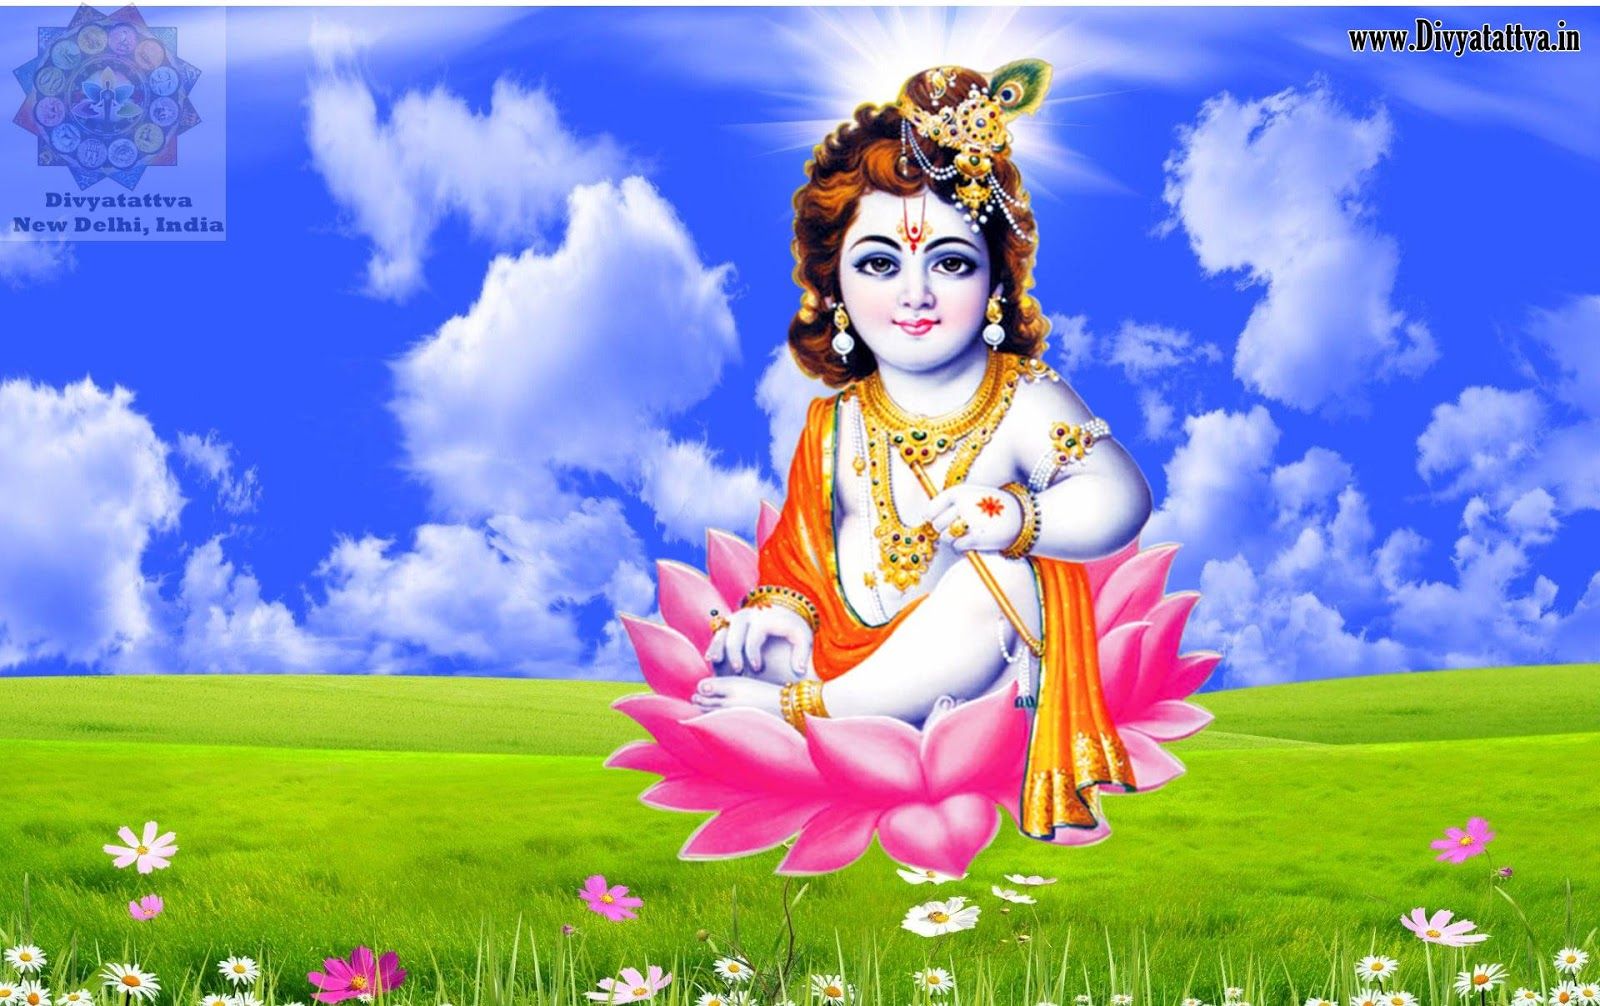 Free Download Image Of Baby Krishna